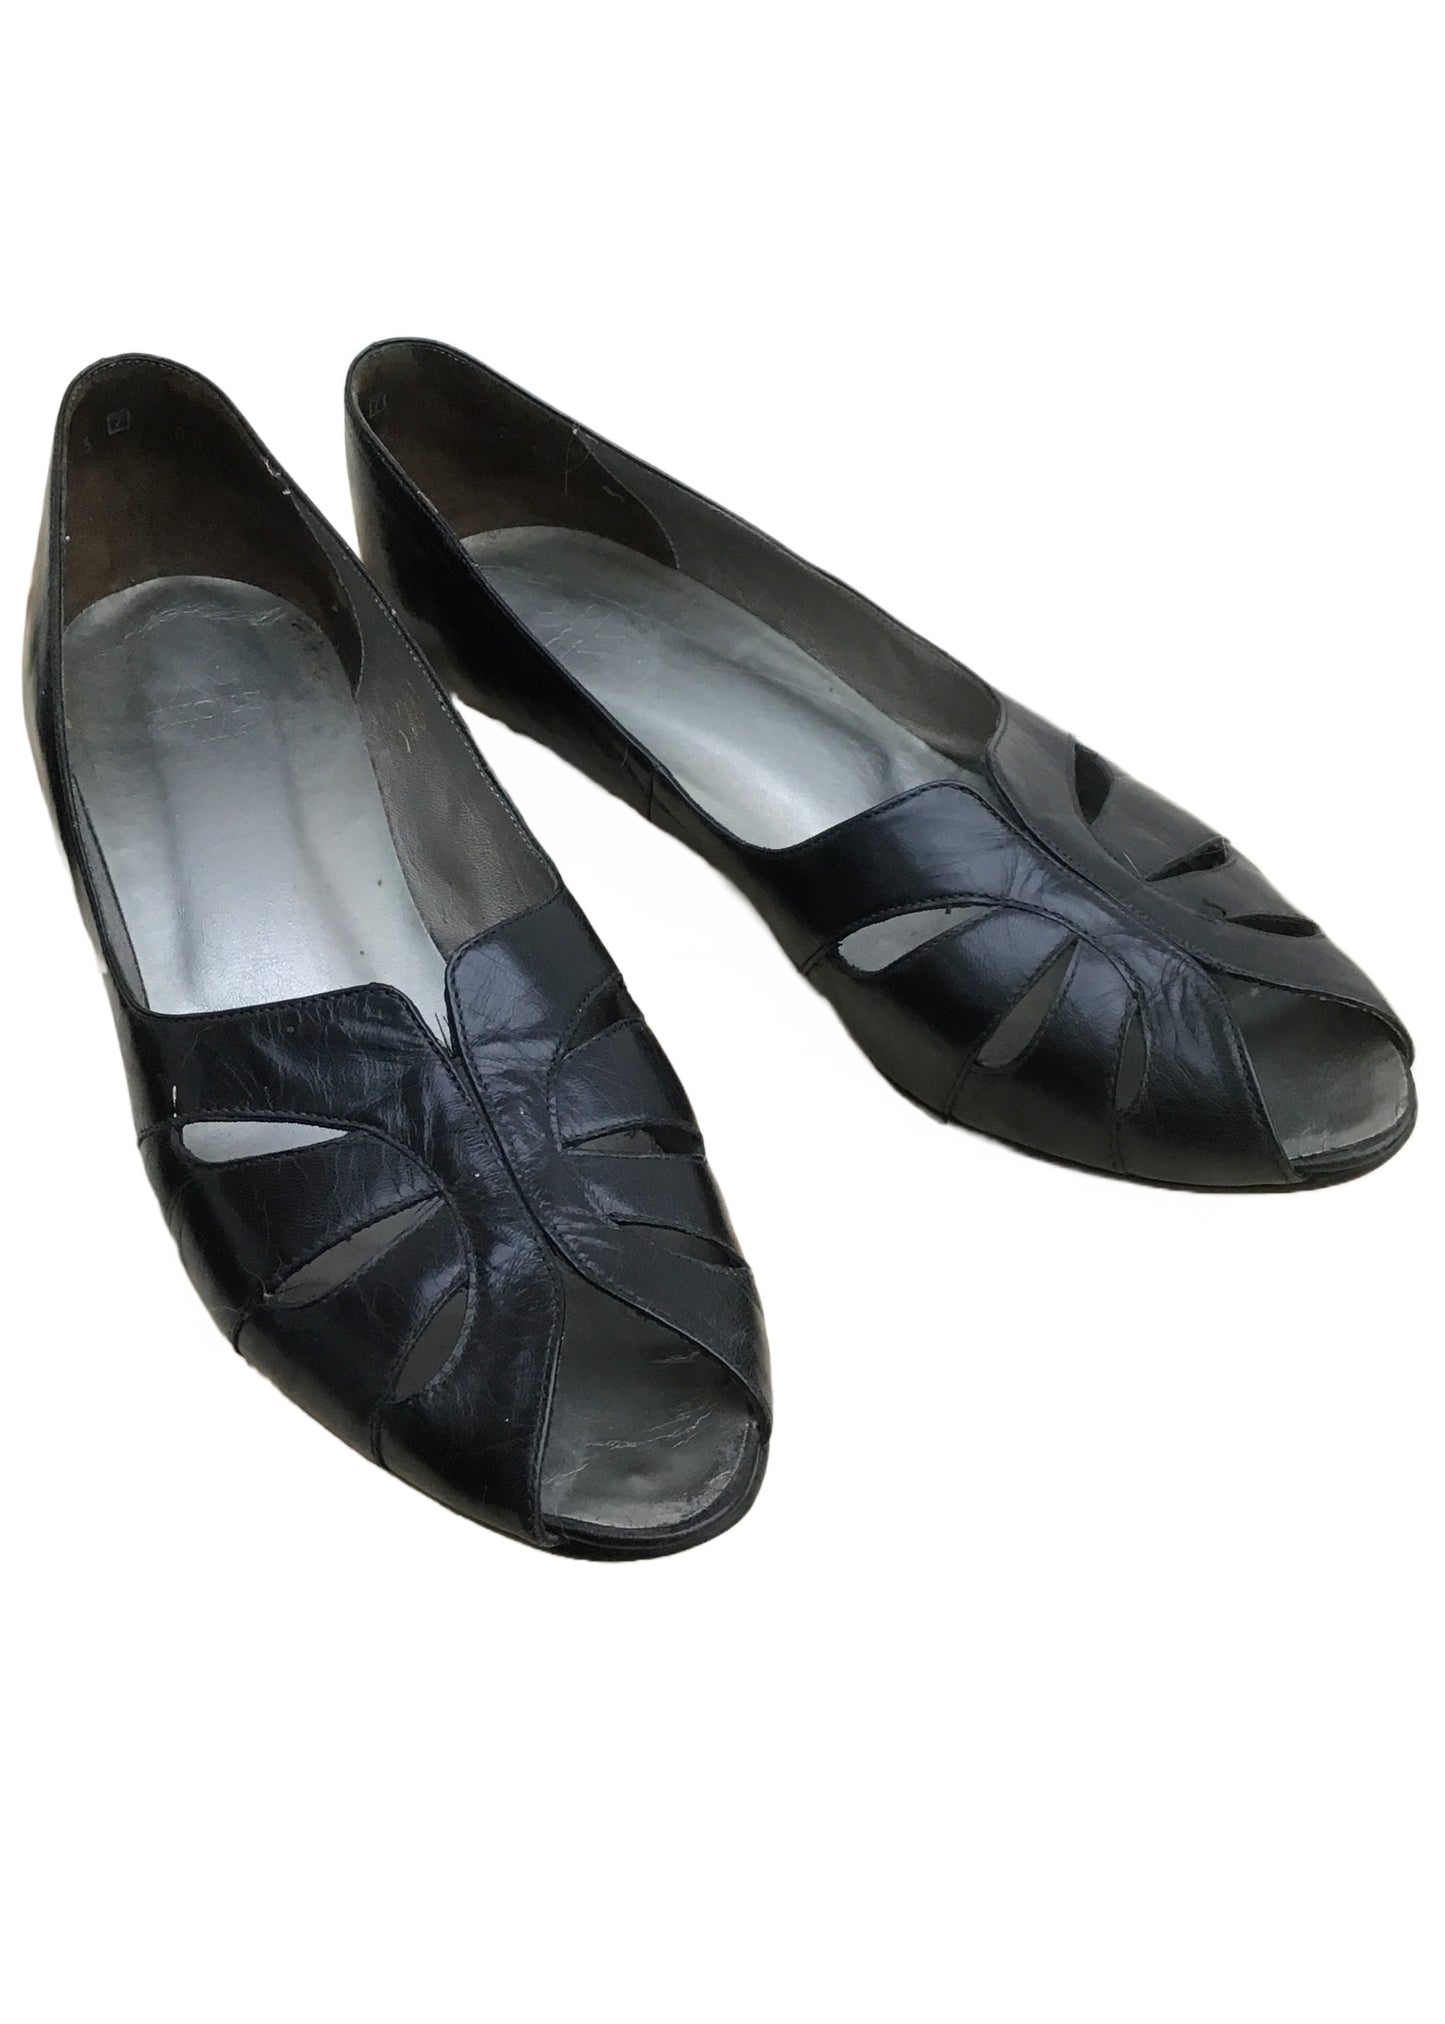 Vintage 80s Black Leather K Peep Toe Pumps Shoes • Clarkes Shoes • size UK7